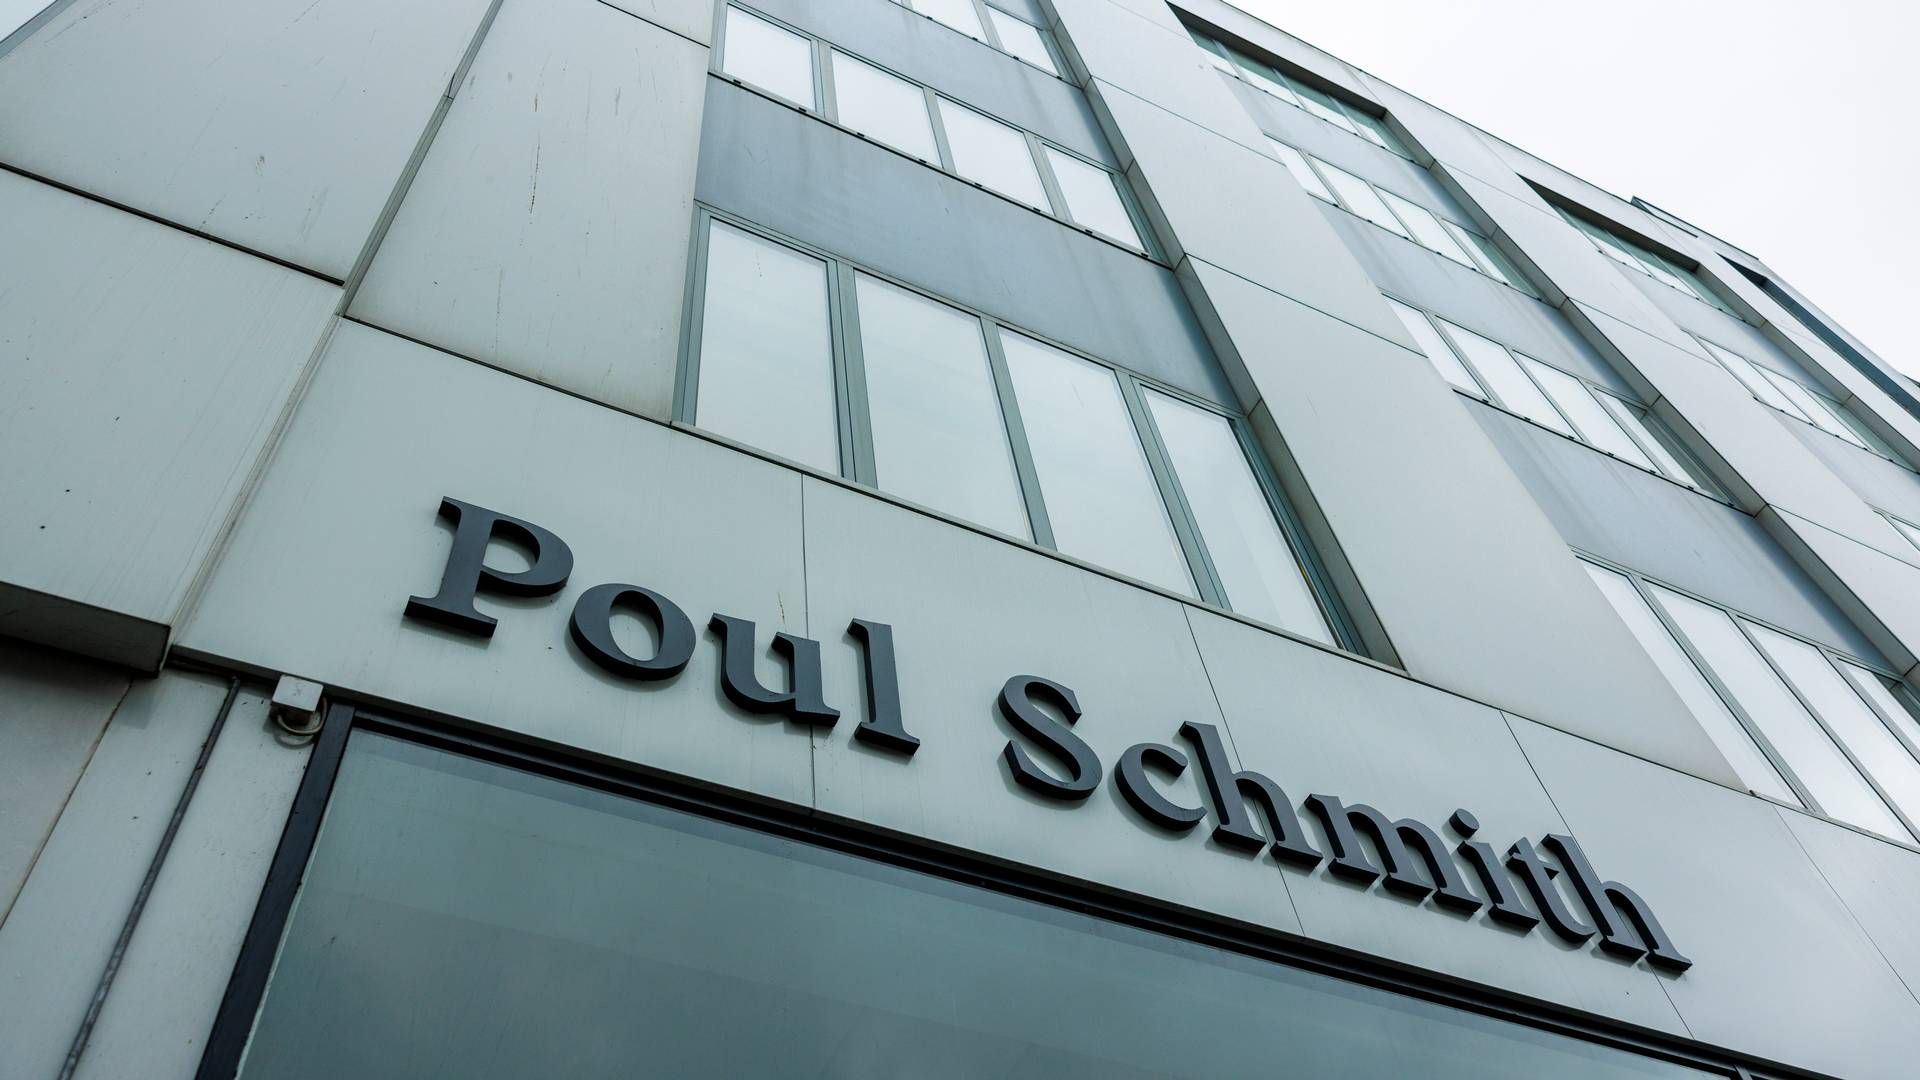 Poul Schmith/Kammeradvokaten er blevet hyret til at lave juridisk vurdering i kostskole-sag i Aalborg. | Foto: Pr